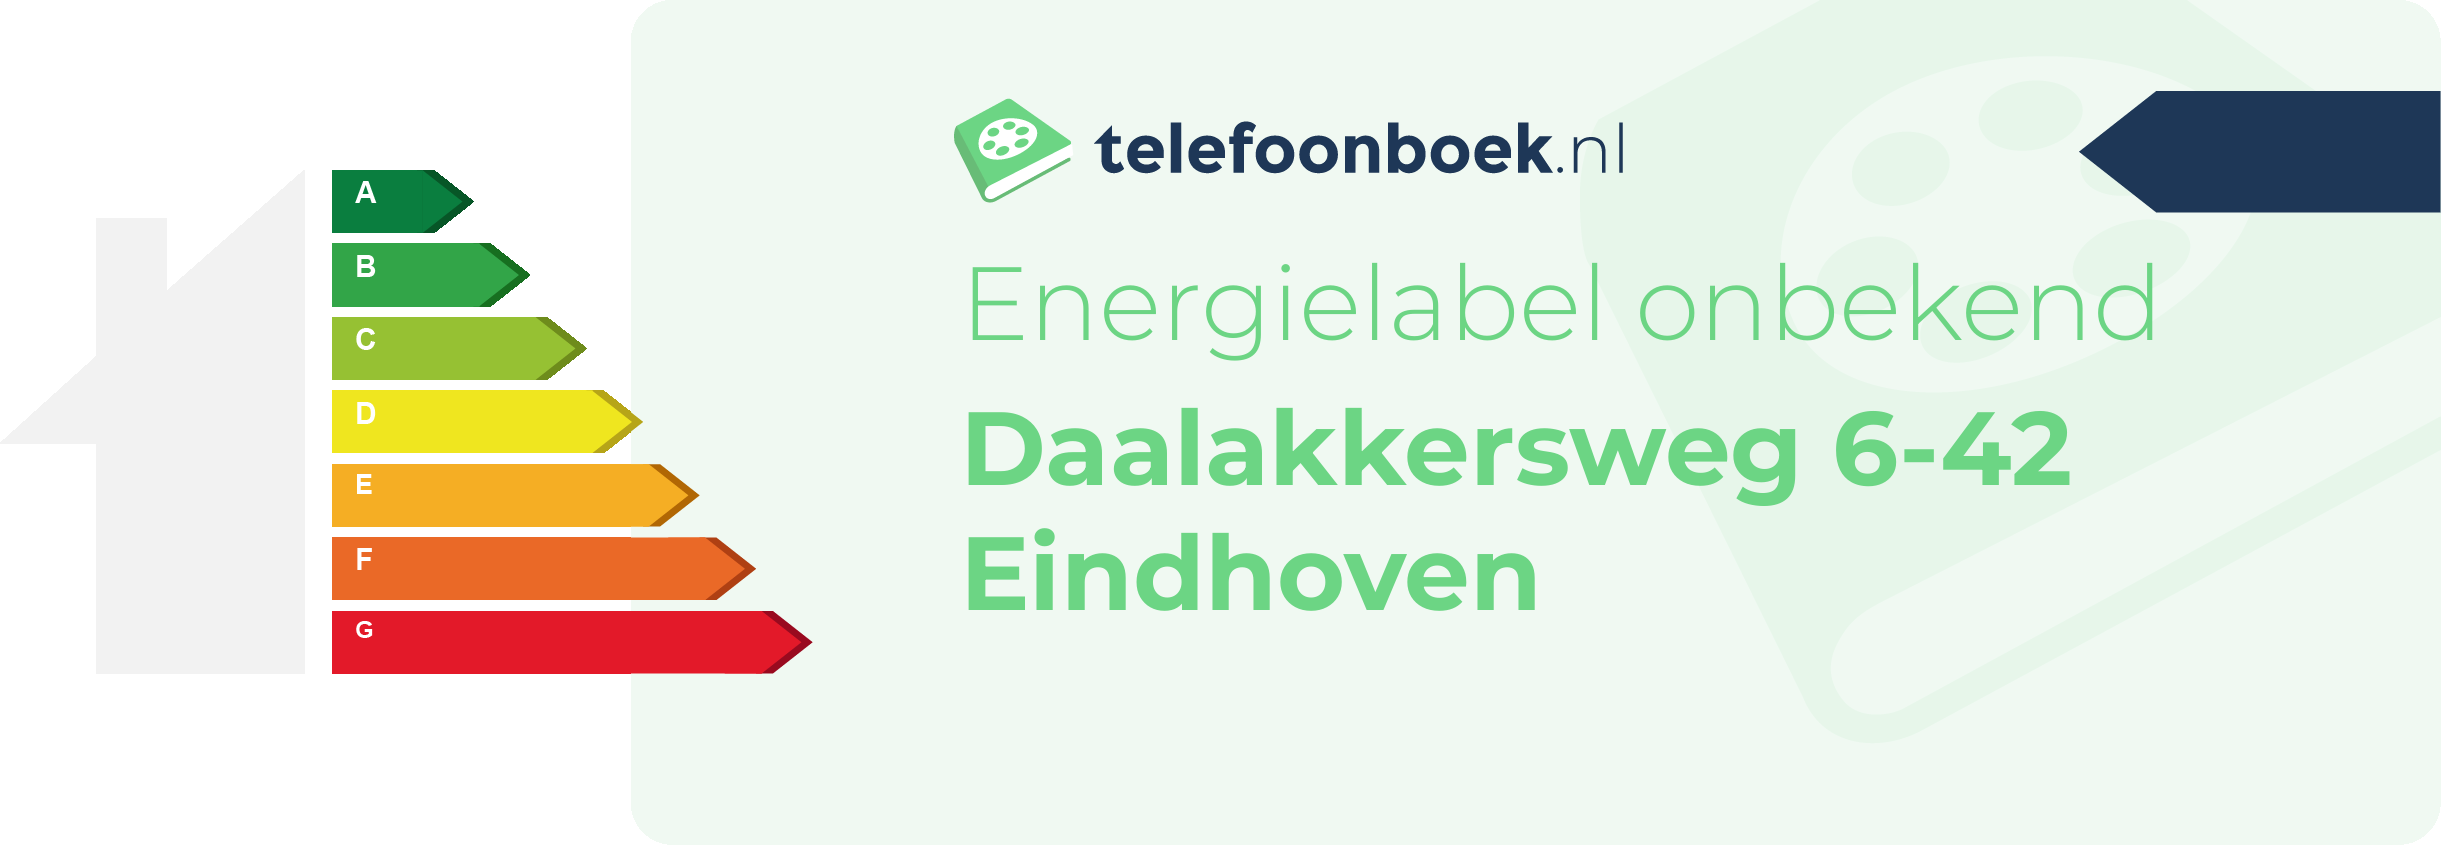 Energielabel Daalakkersweg 6-42 Eindhoven